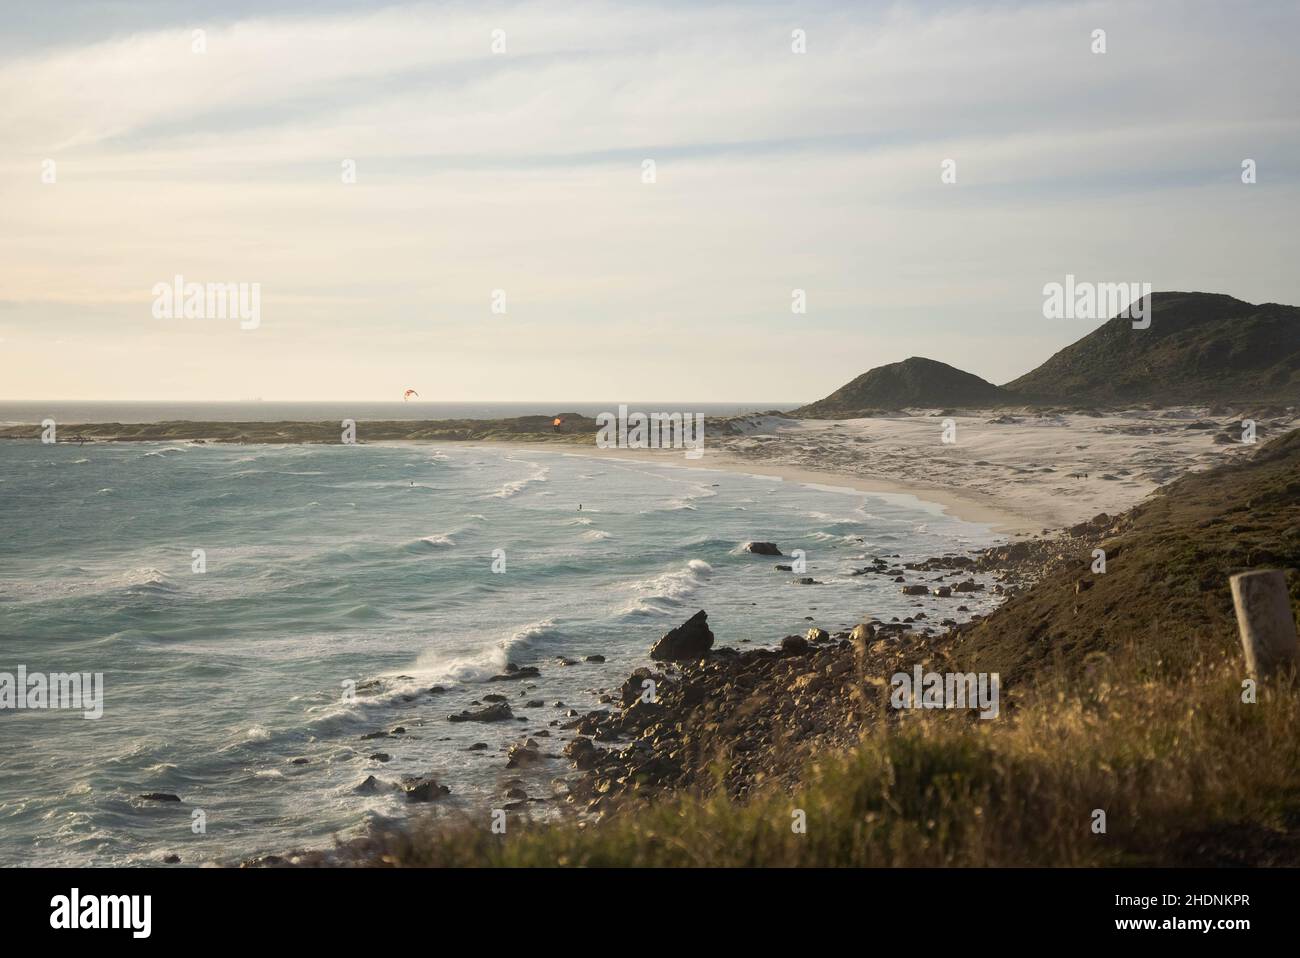 Belle vue sur l'océan Atlantique Sud ondulé qui touche la plage de sable sur la côte à Witsand Banque D'Images